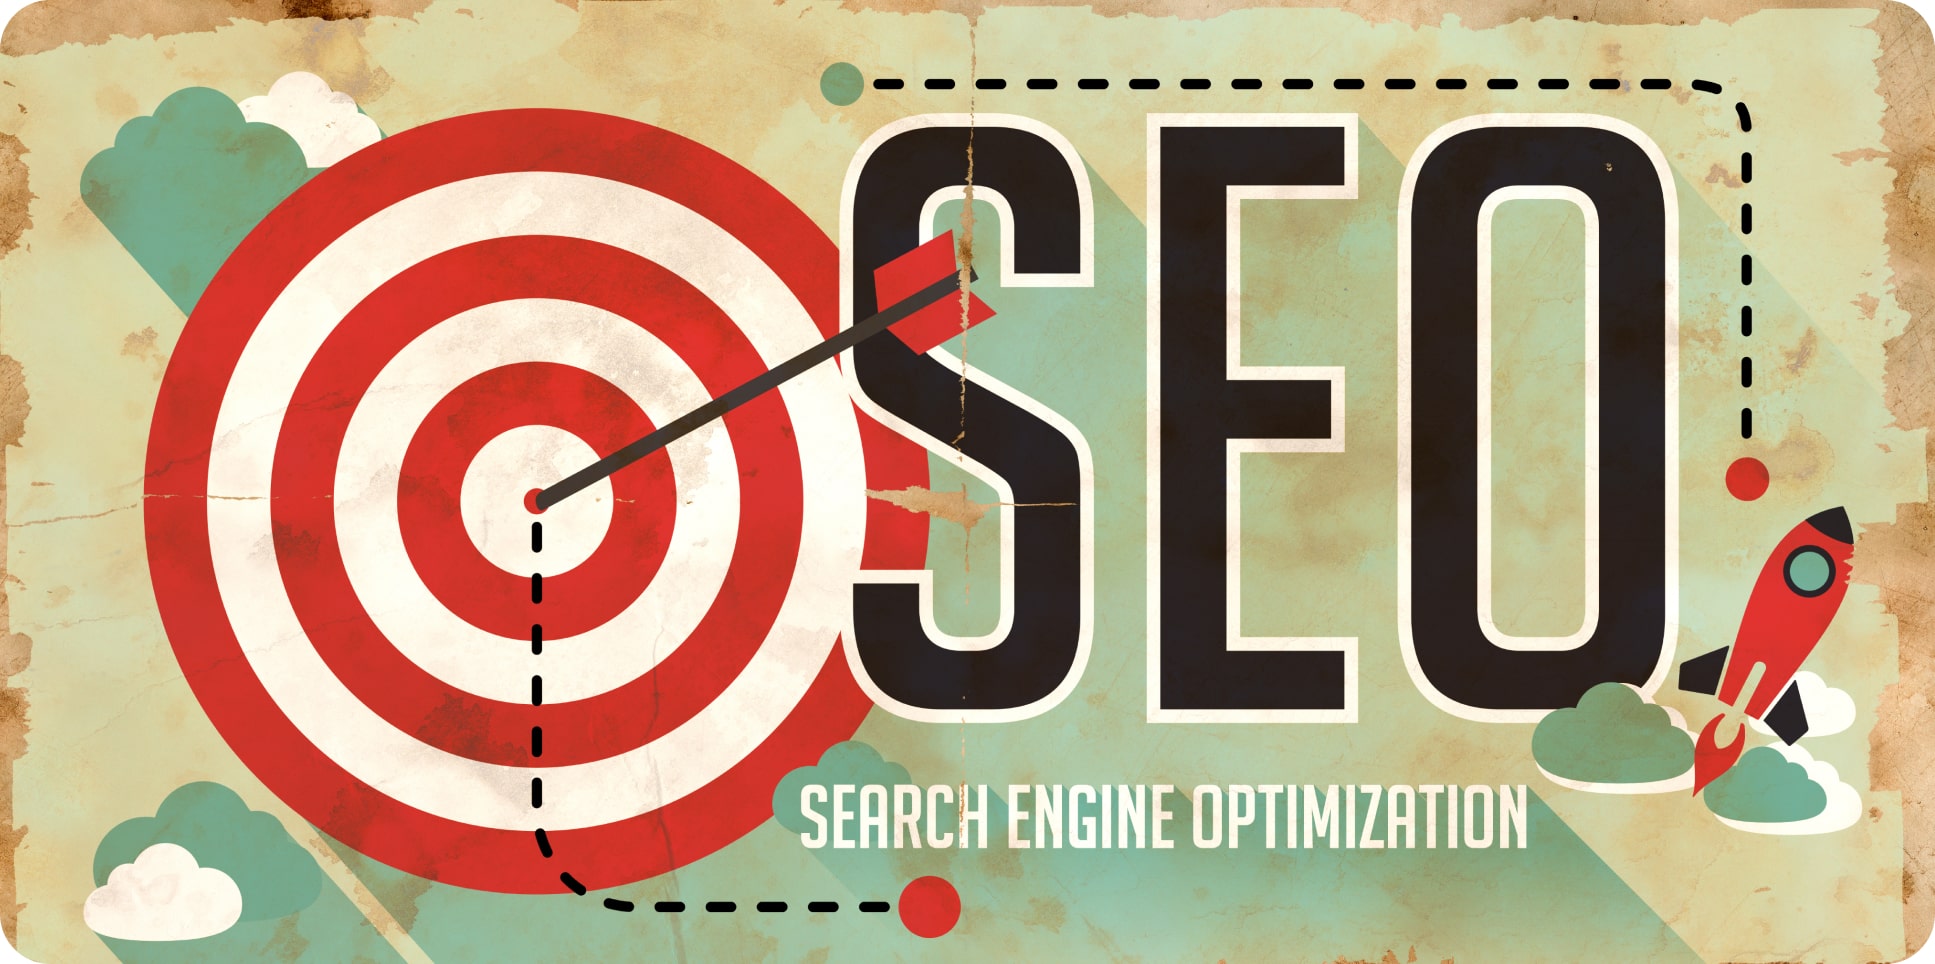 Векторная иллюстрация с надписью SEO (Search Engine Optimization) и целью. Иллюстрация символизирует важность оптимизации сайта для достижения целей в поисковых системах